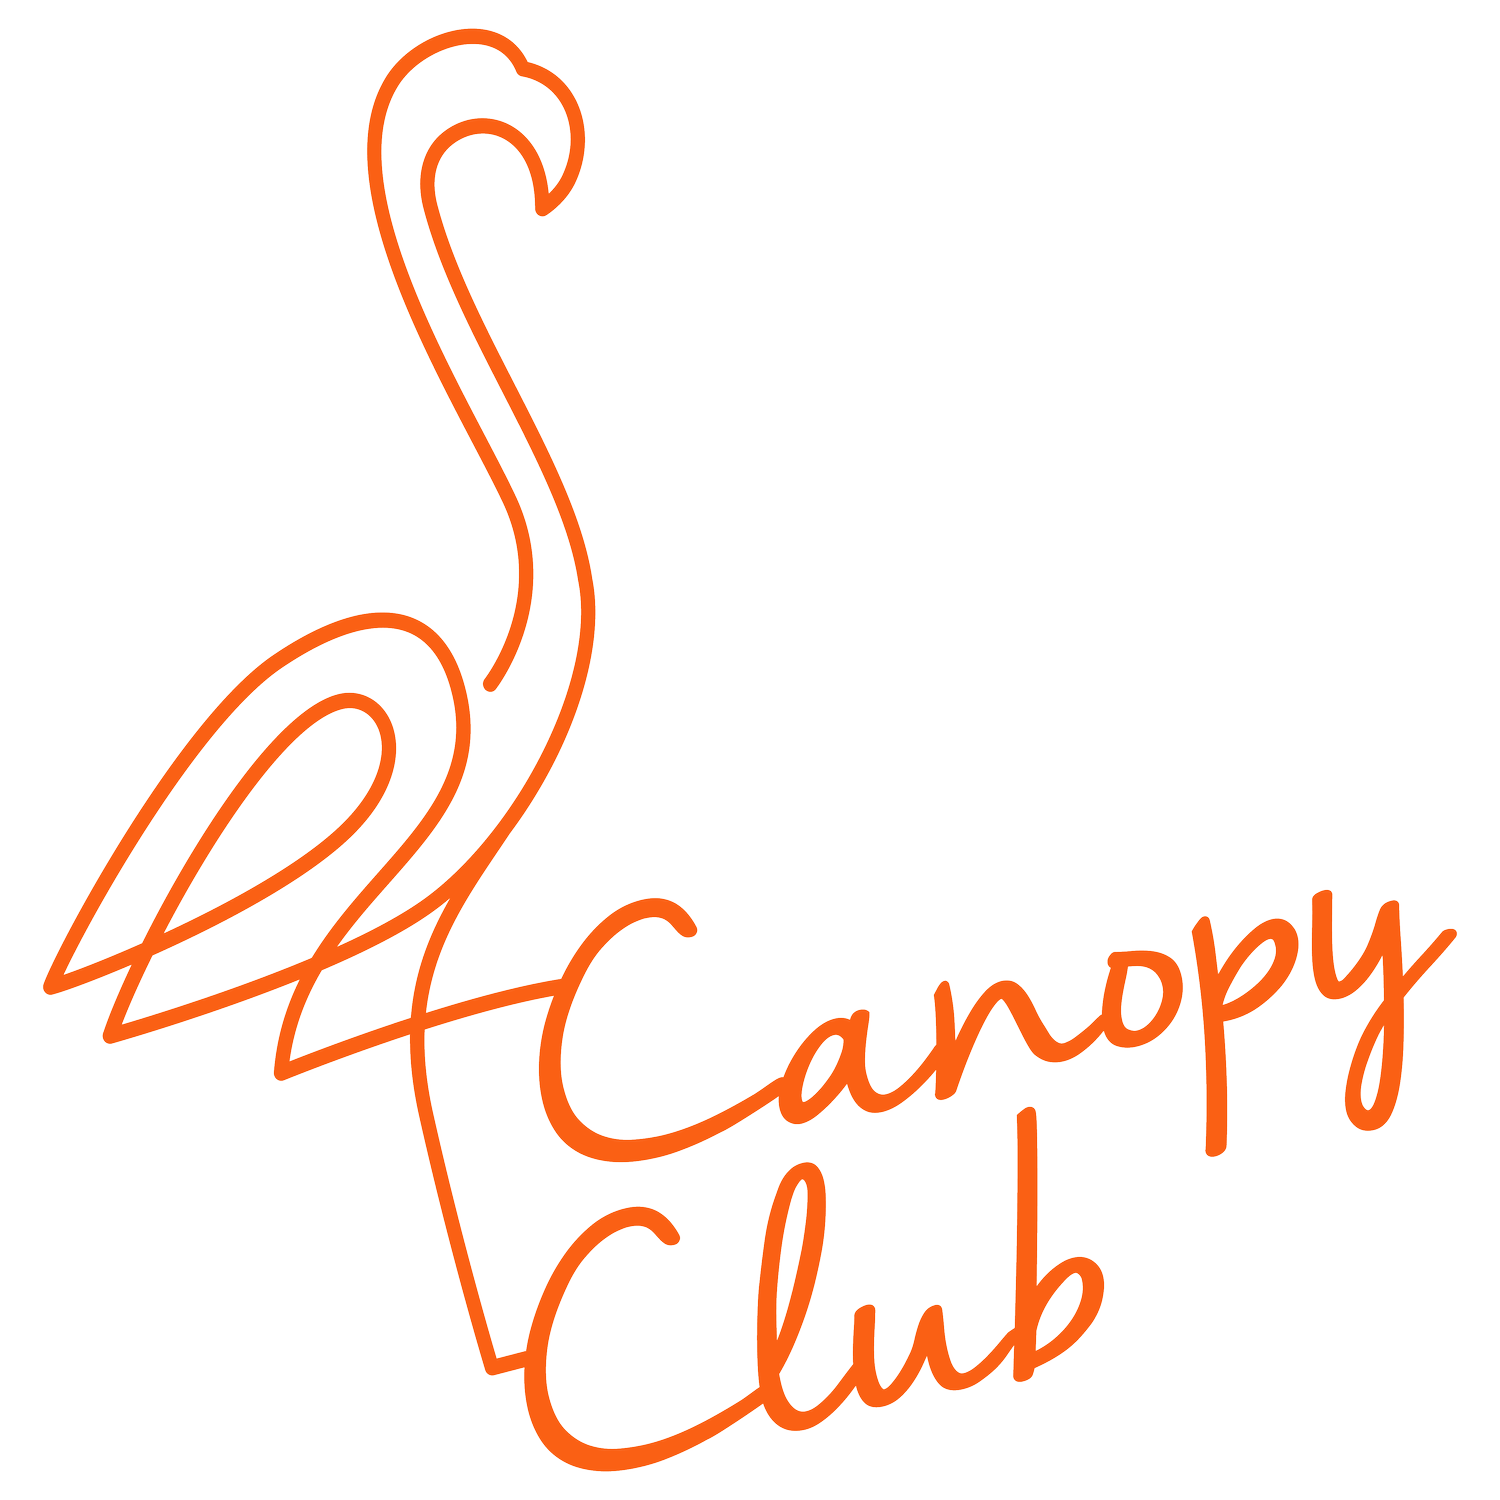 Canopy Club